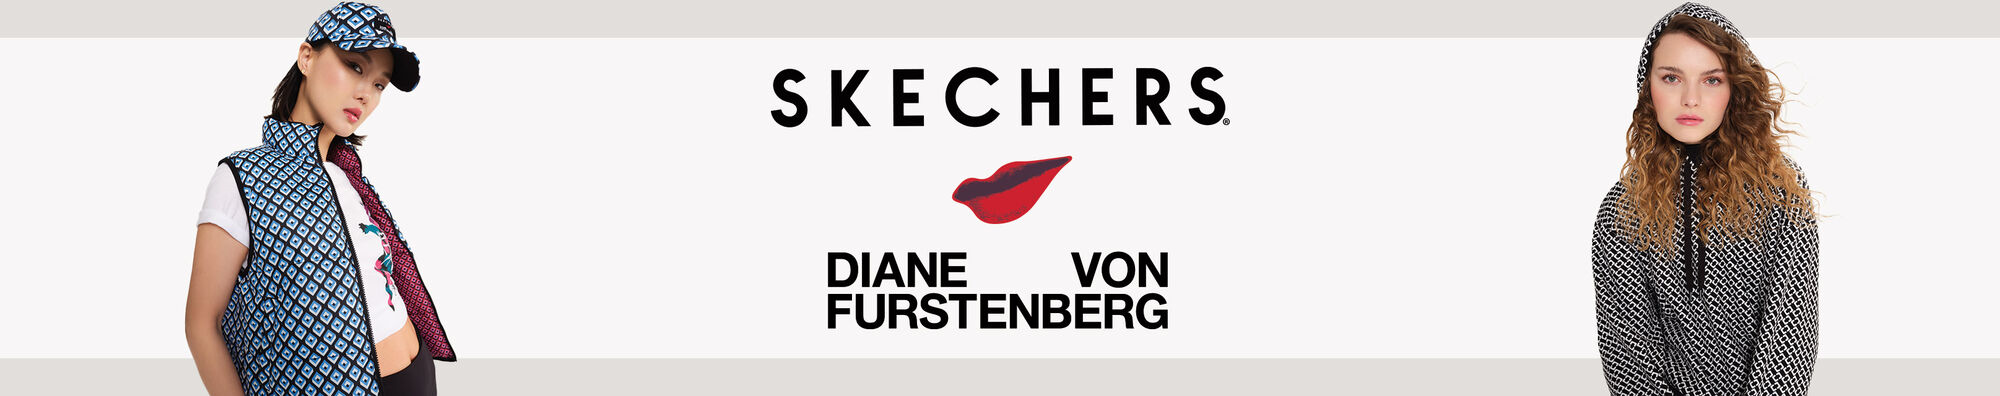 Skechers team up with fashion icon Diane von Furstenberg for brand